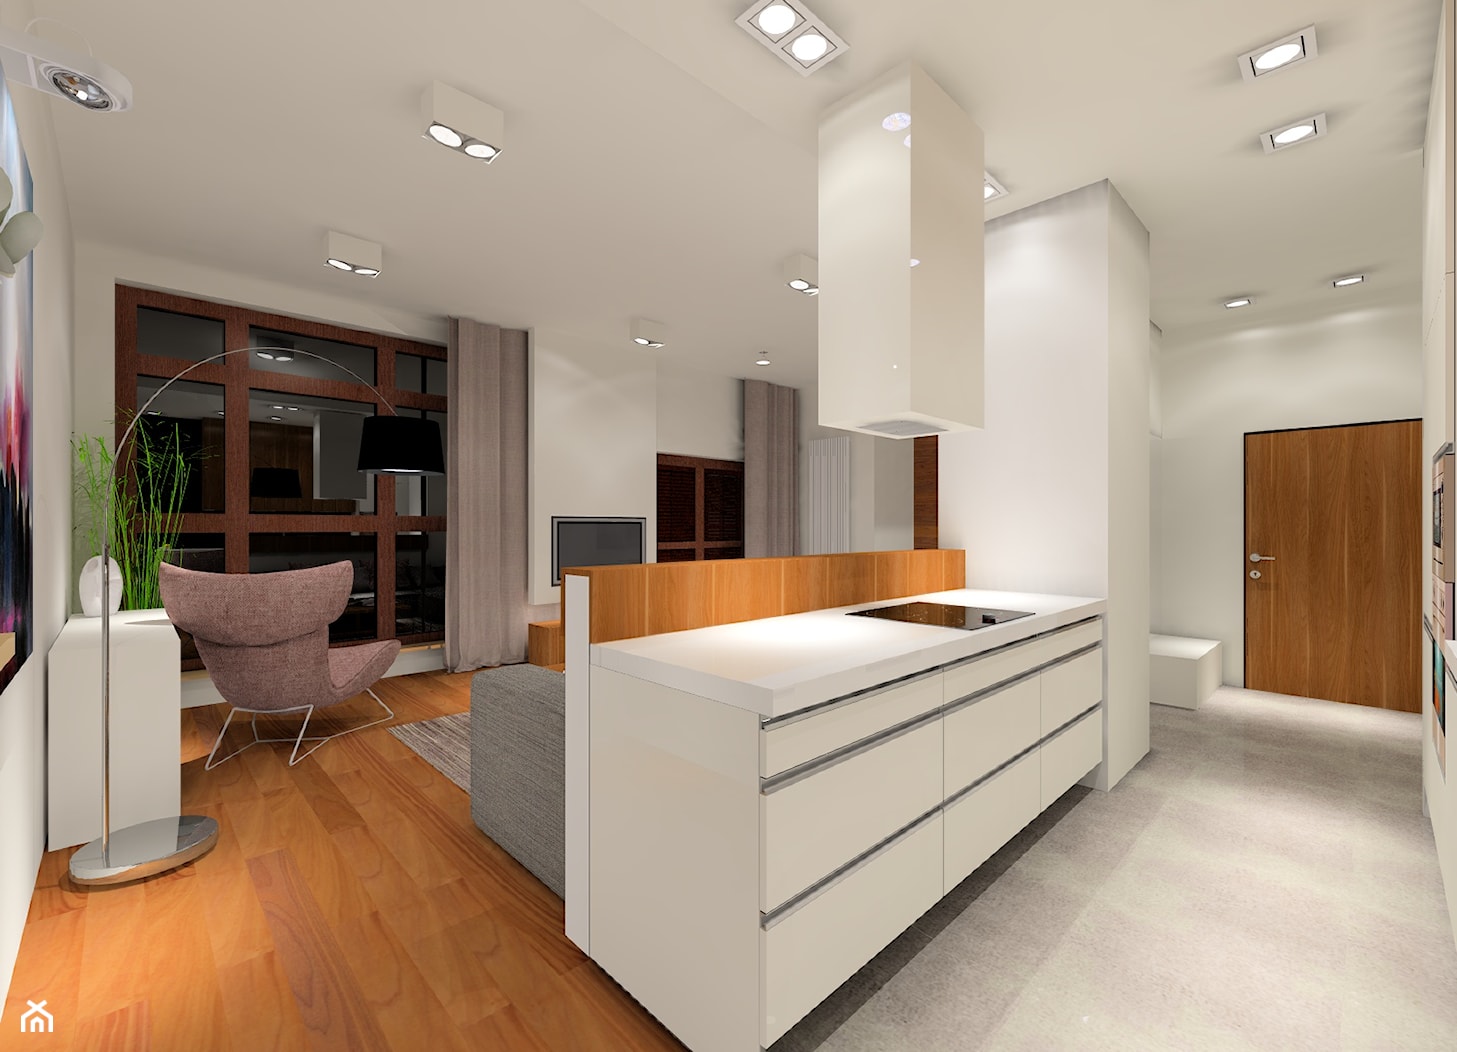 Nowoczesny projekt mieszkania - Kuchnia, styl nowoczesny - zdjęcie od MKdezere - Homebook